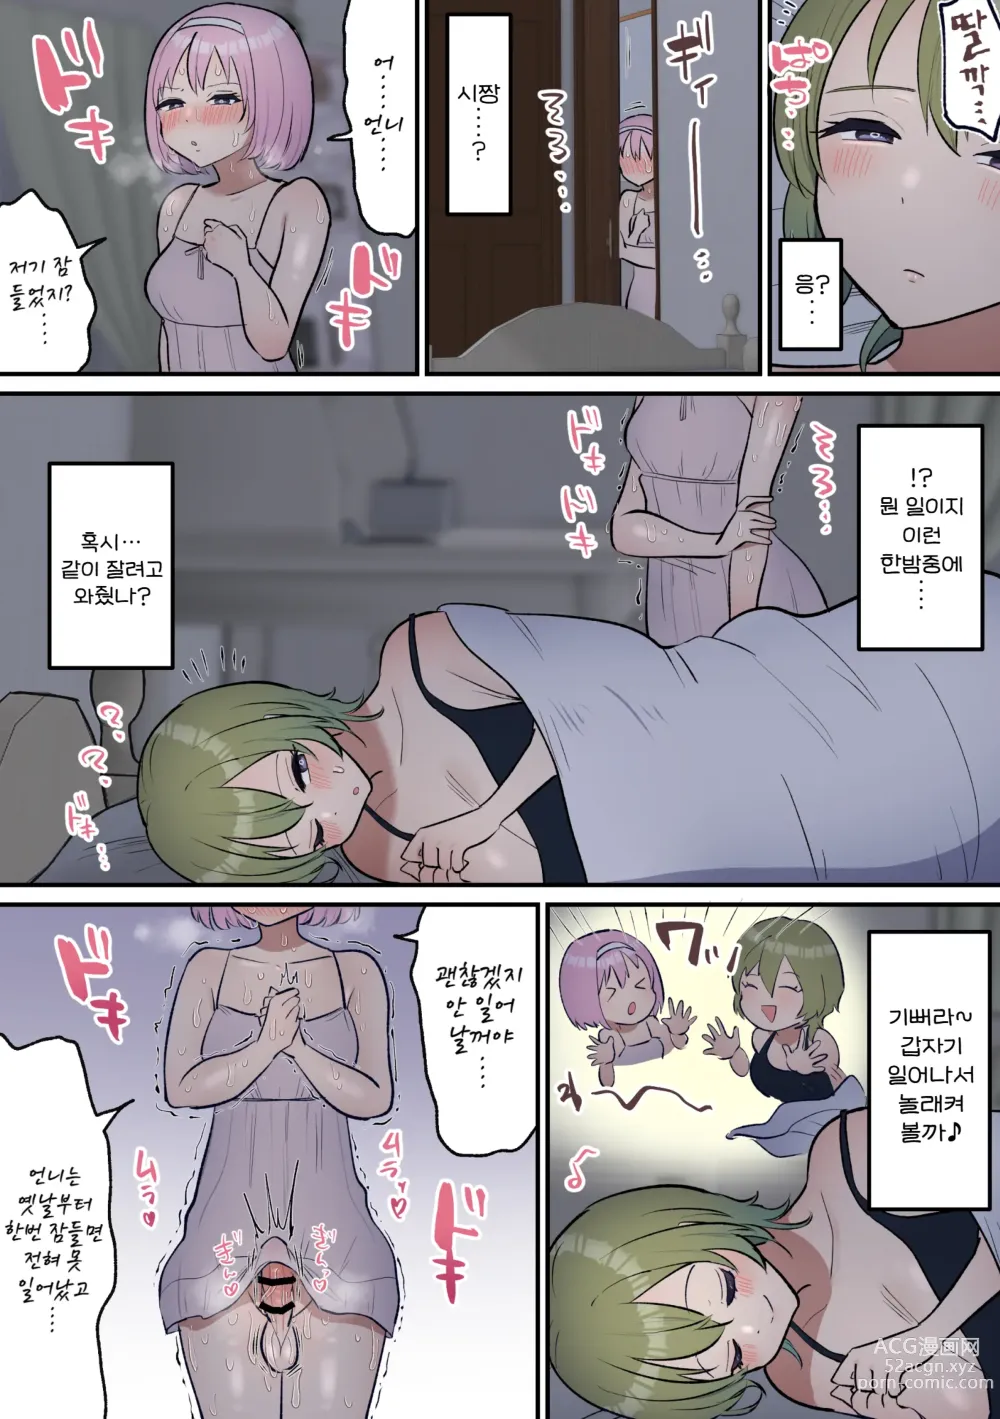 Page 6 of doujinshi 잠든 척하며 교미시켜주는 언니와 후타나리 여동생